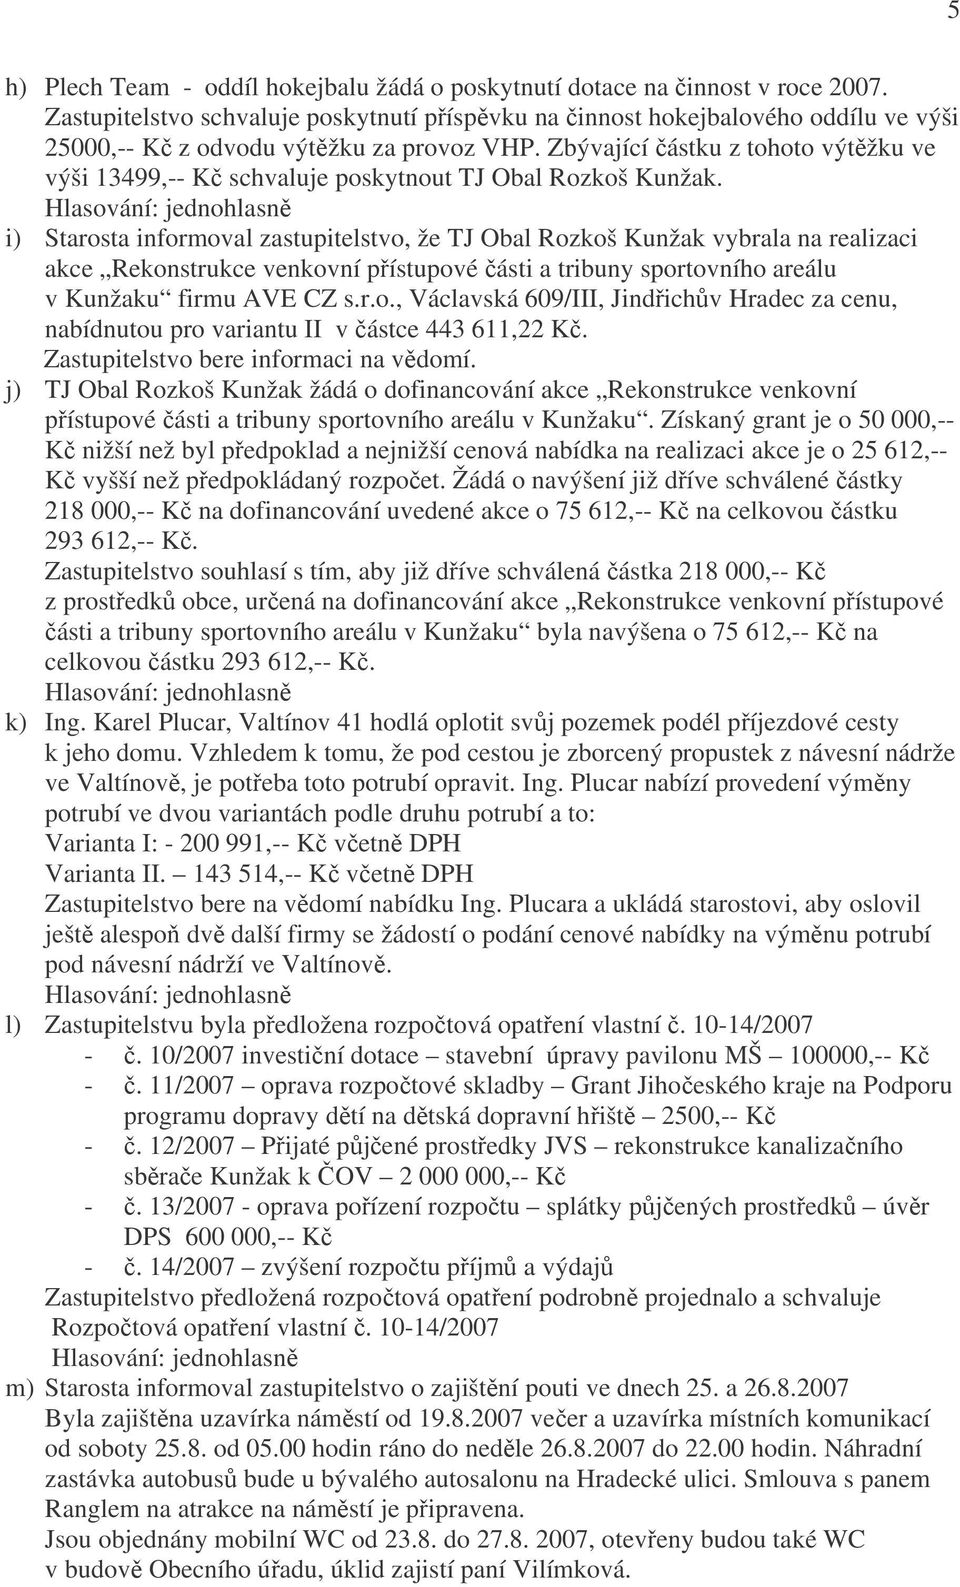 Zbývající částku z tohoto výtěžku ve výši 13499,-- Kč schvaluje poskytnout TJ Obal Rozkoš Kunžak.